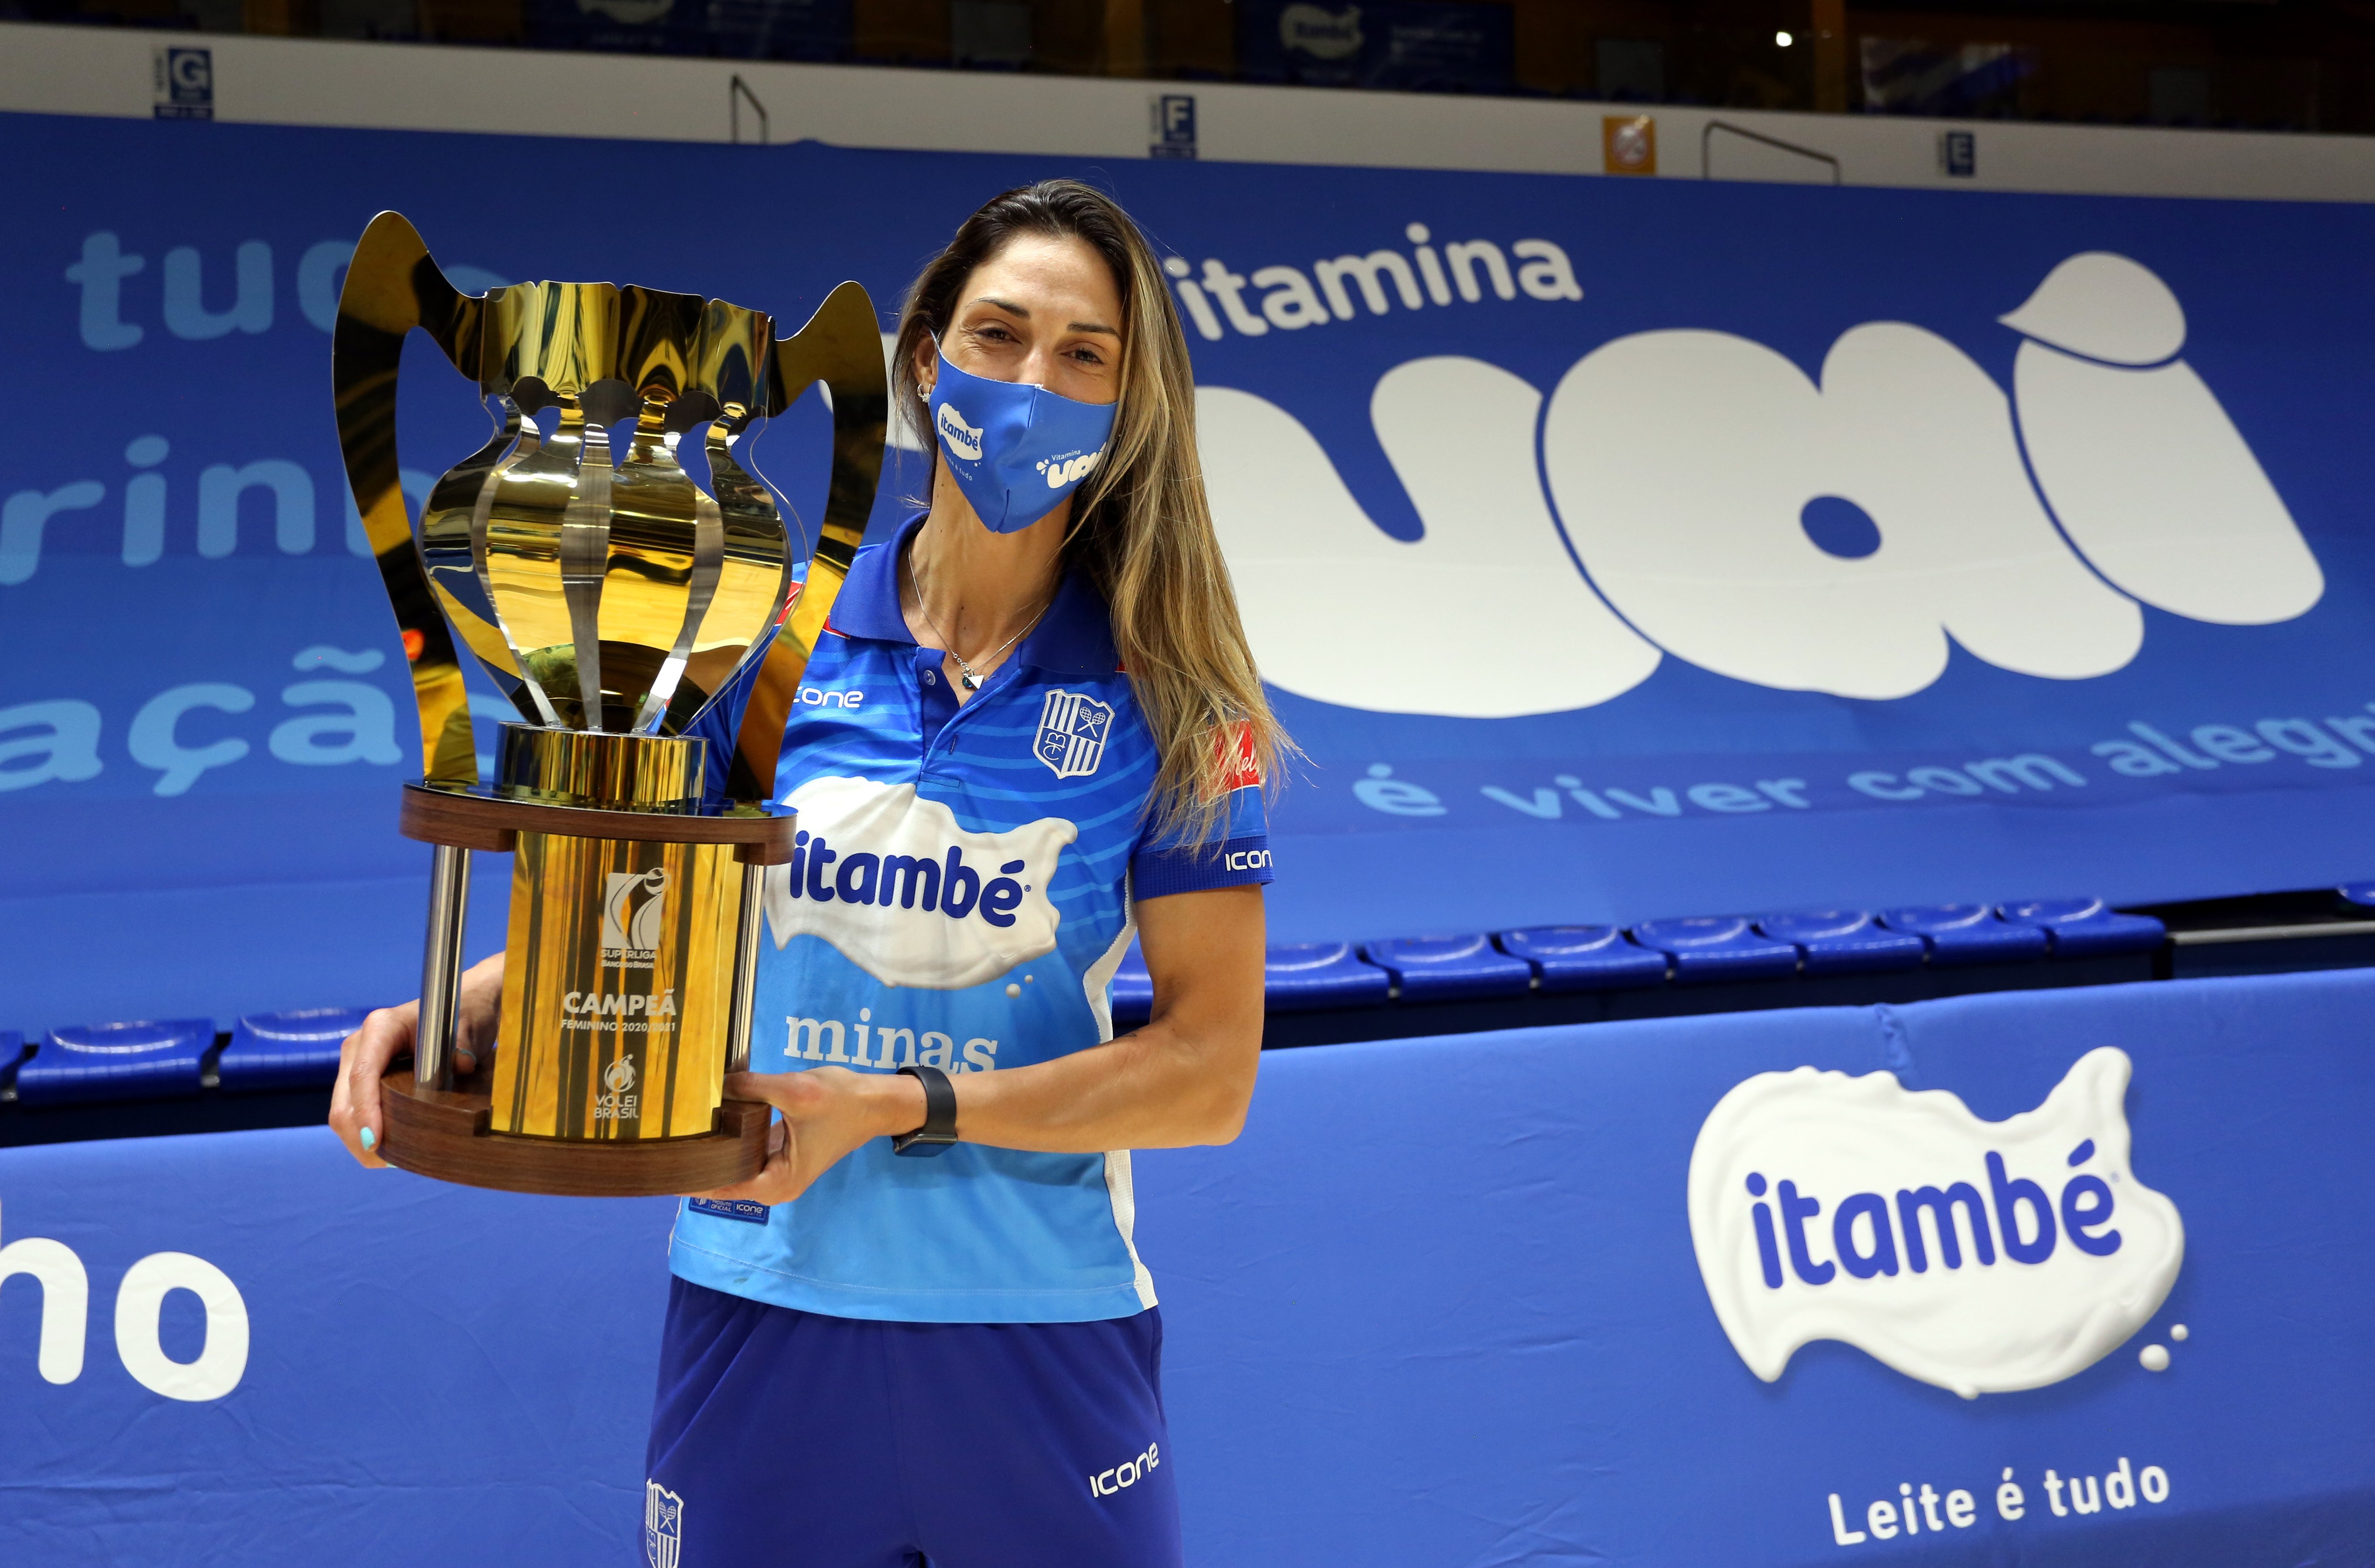 Carol conquistou o segundo título com a camisa da Superliga Feminina (Foto: Orlando Bento/MTC)